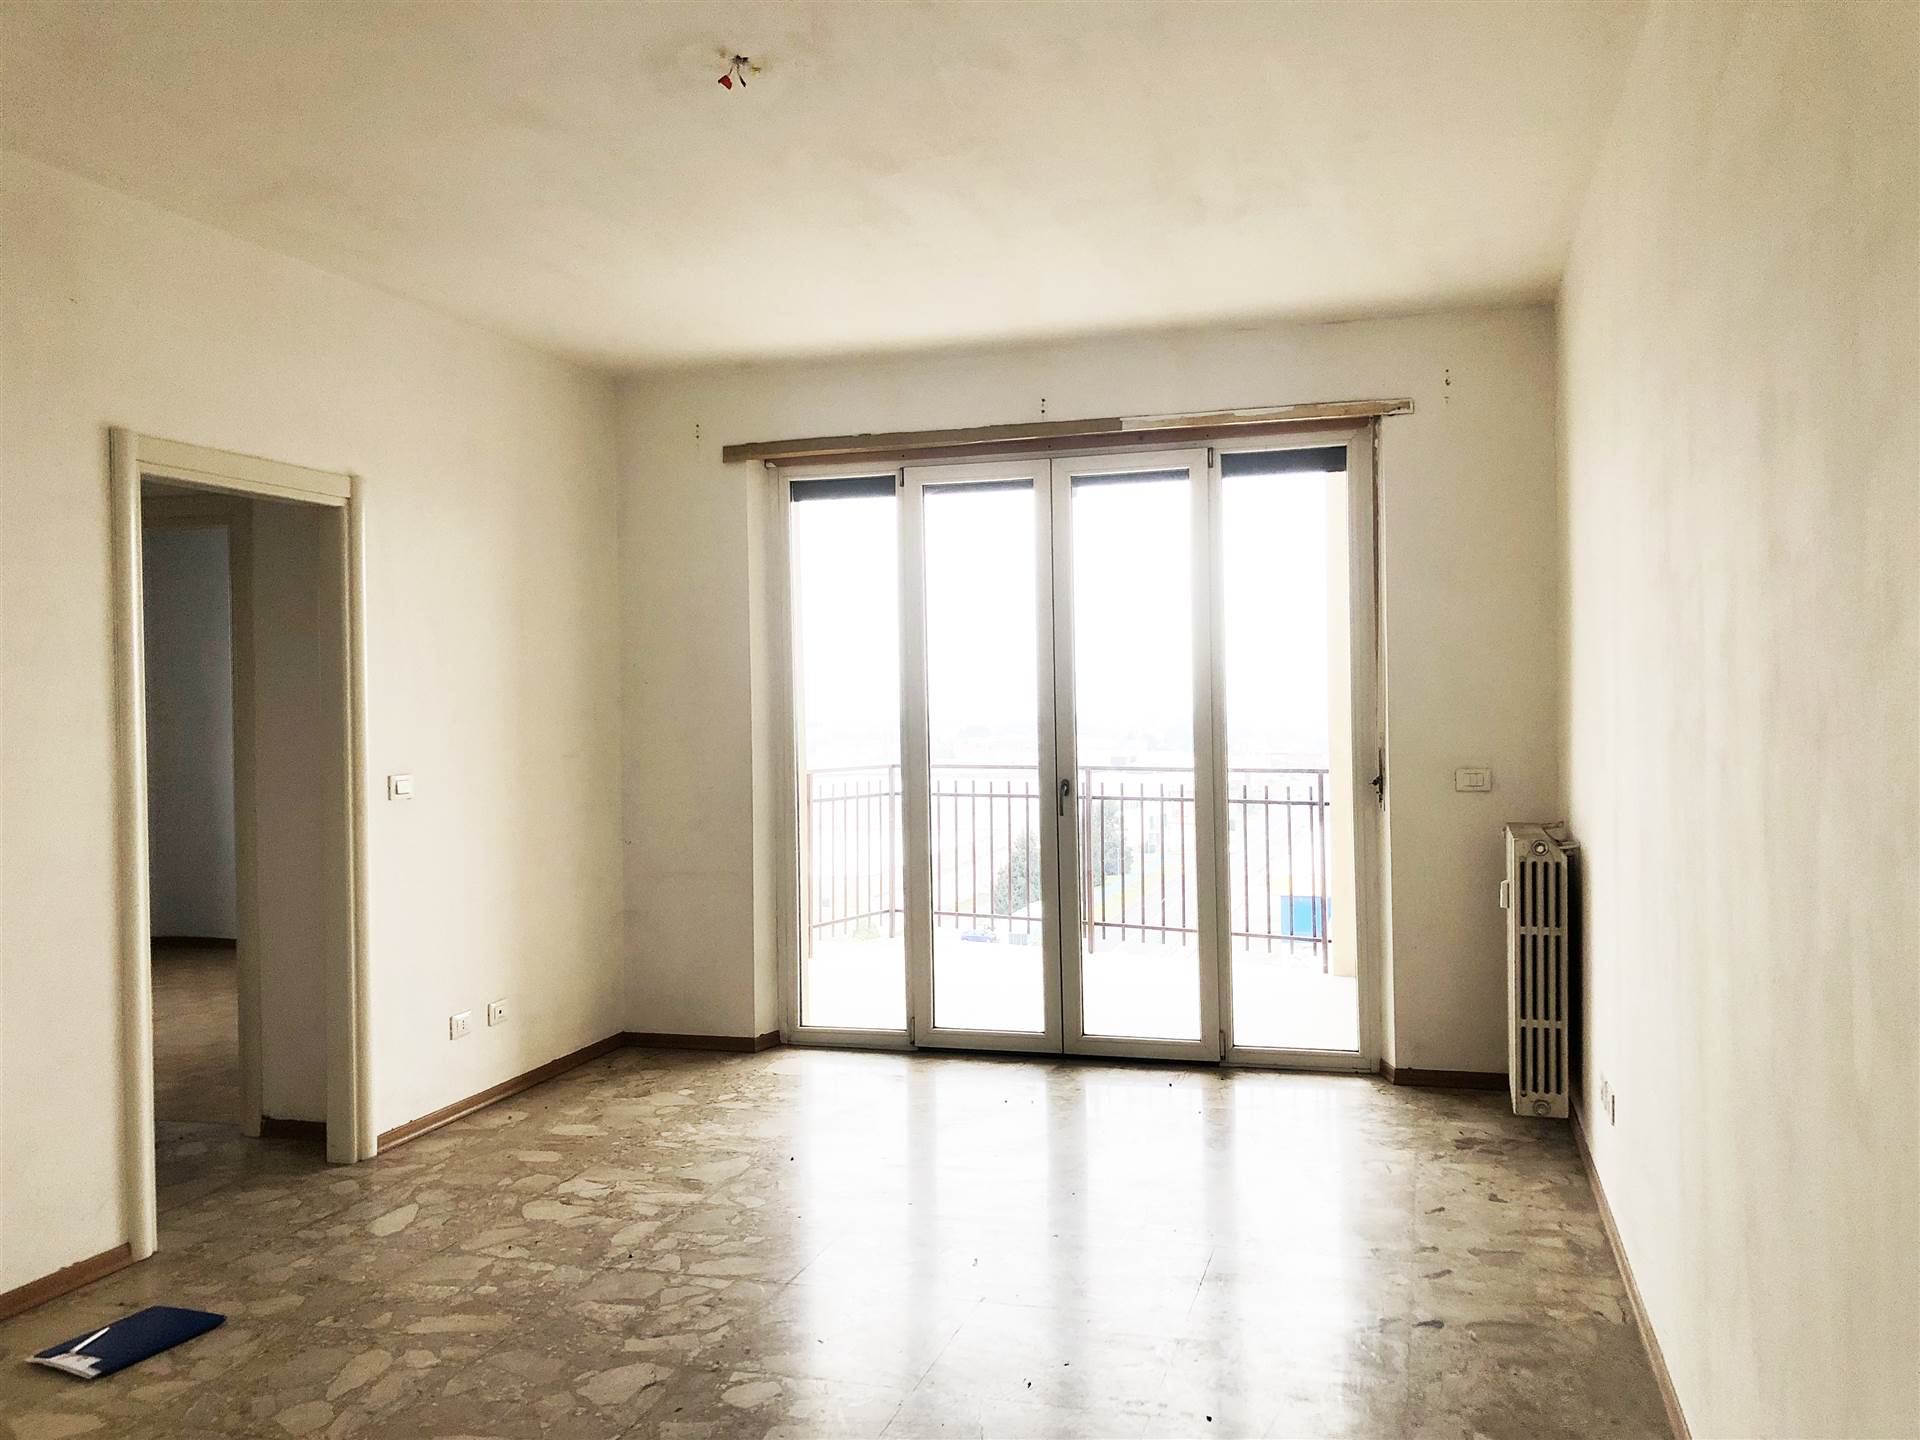 Appartamento in vendita a Verrone, 4 locali, prezzo € 68.000 | PortaleAgenzieImmobiliari.it